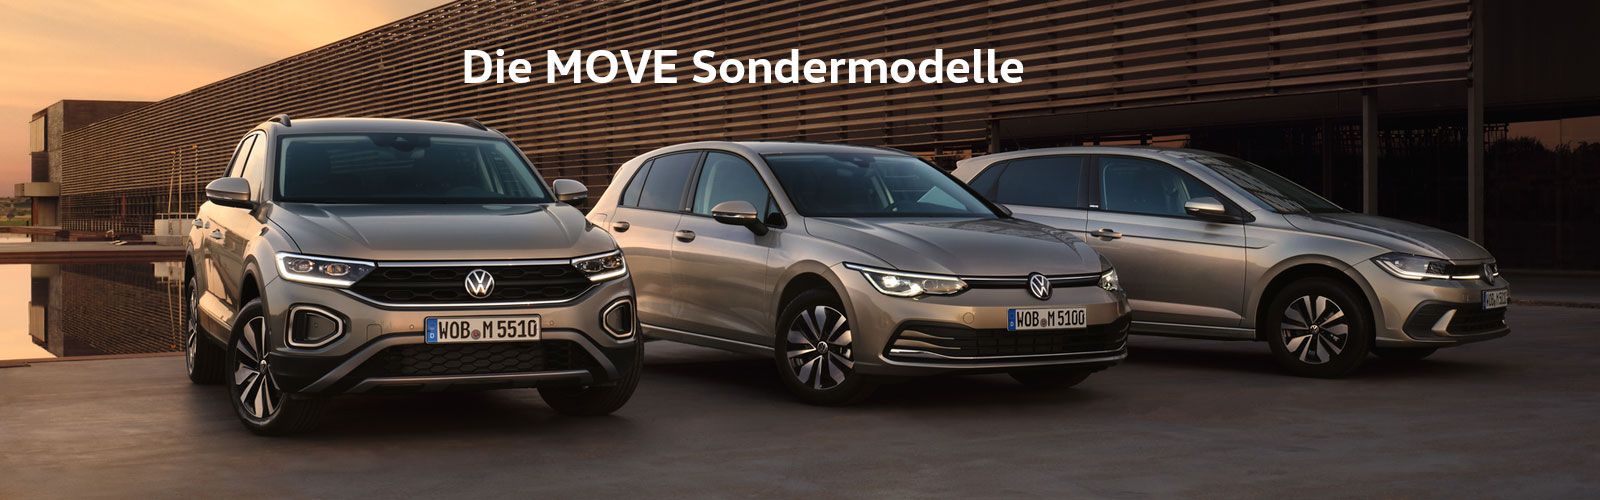 VW Move Modelle